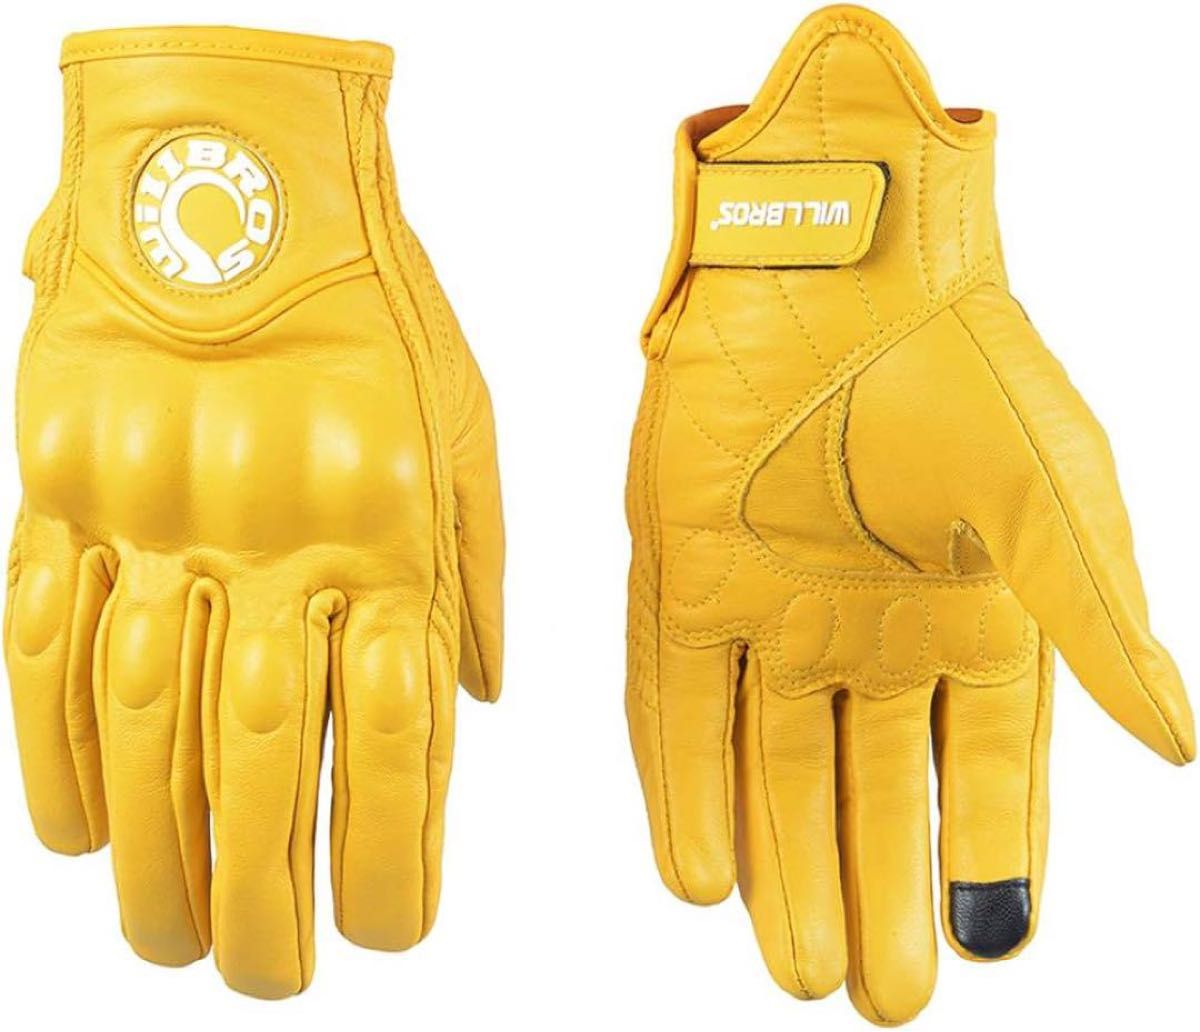 【新品･未使用】Willbros グローブ バイク 手袋 黄色 Mサイズ レザー フルフィンガー スマホ対応 オートバイ